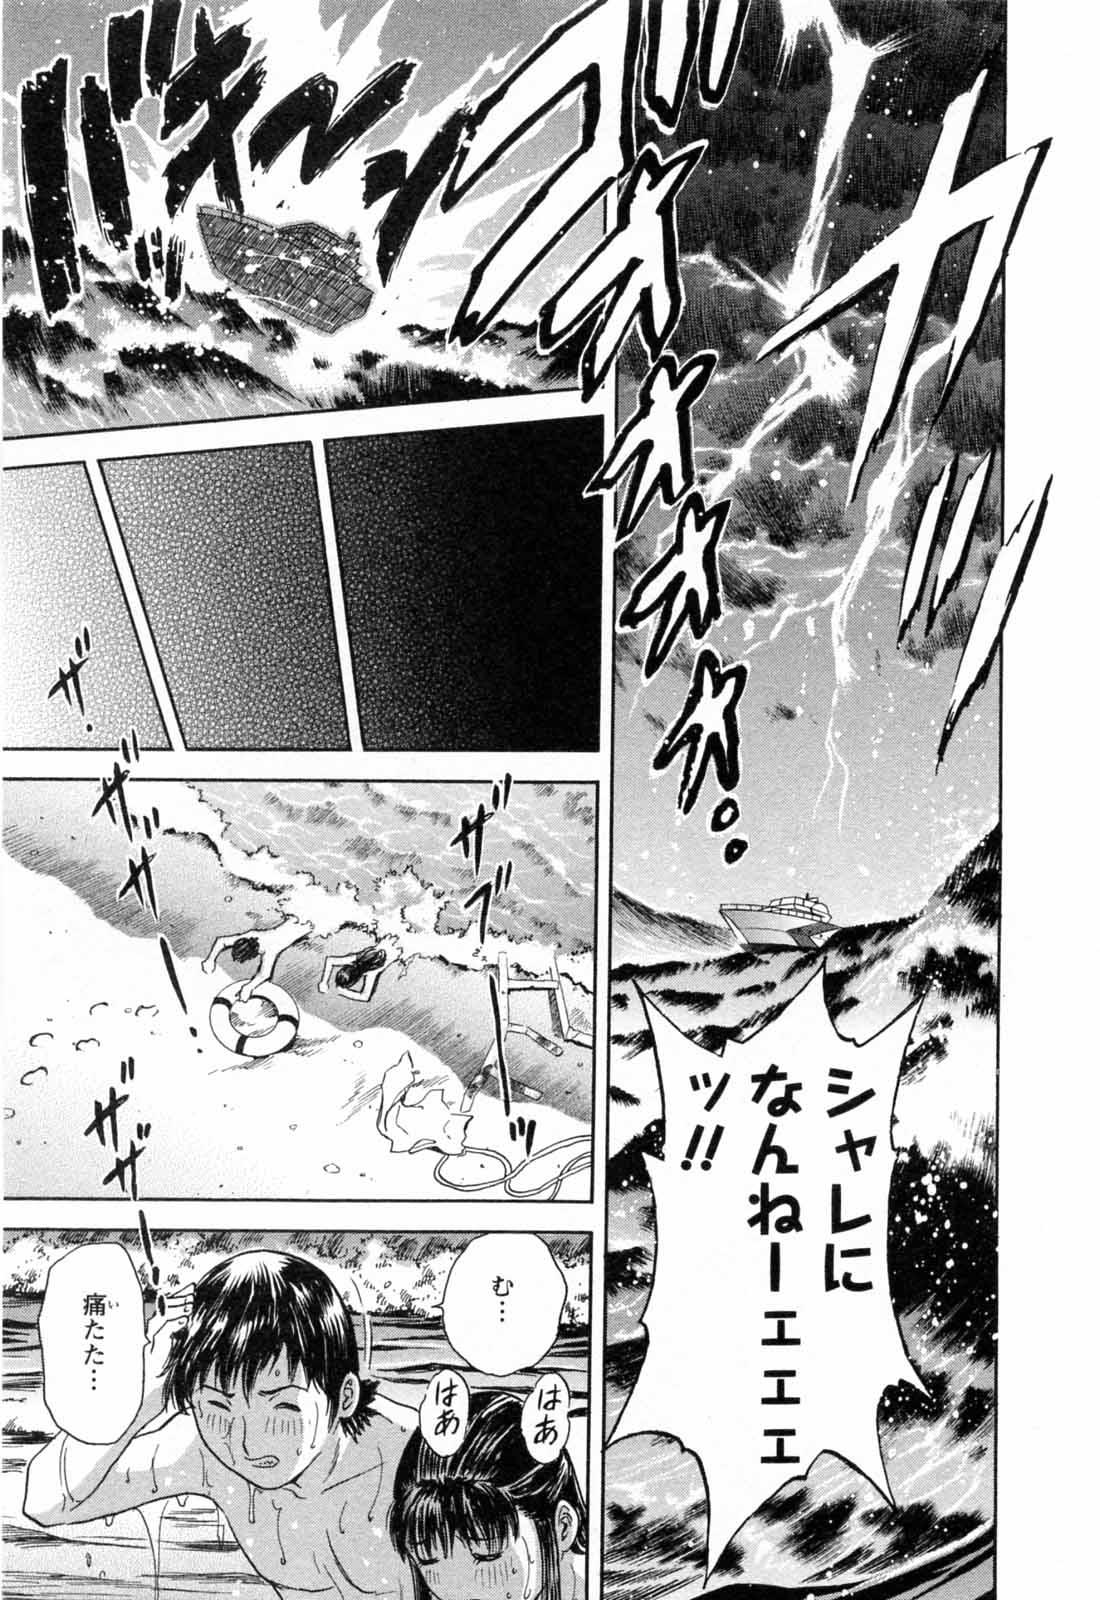 [Hidemaru] Mo-Retsu! Boin Sensei (Boing Boing Teacher) Vol.5 138